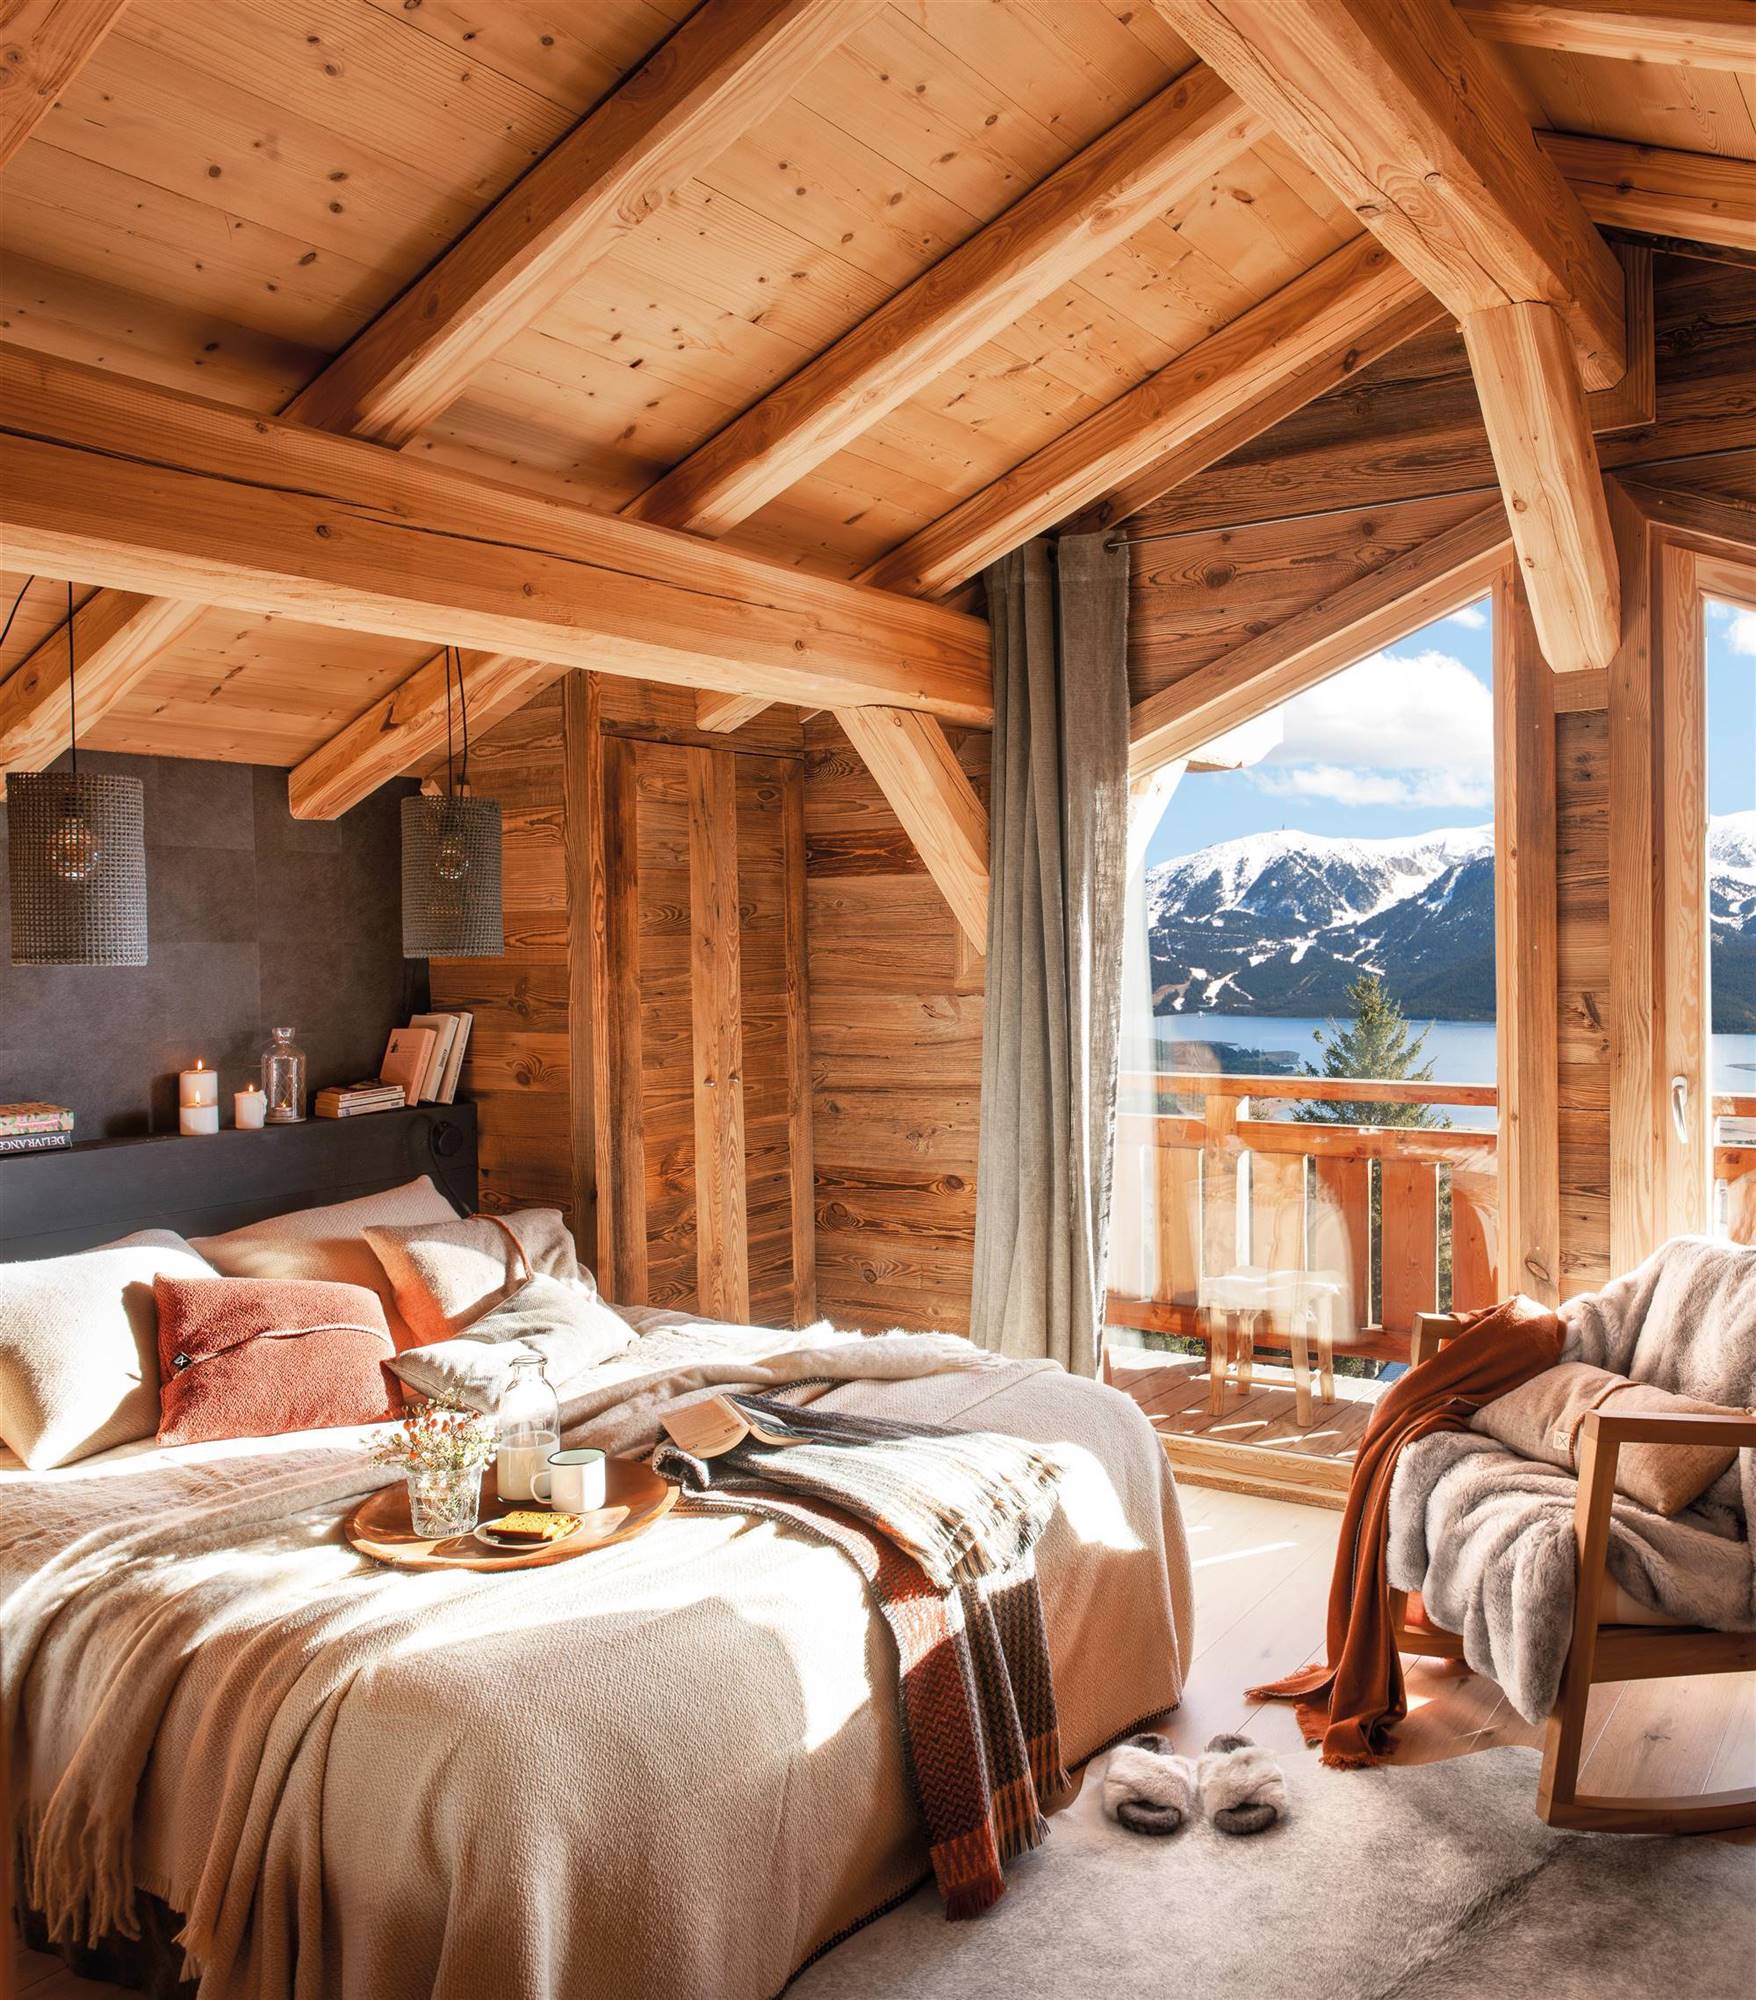 Dormitorio de invierno con techo de madera abuhardillado. 